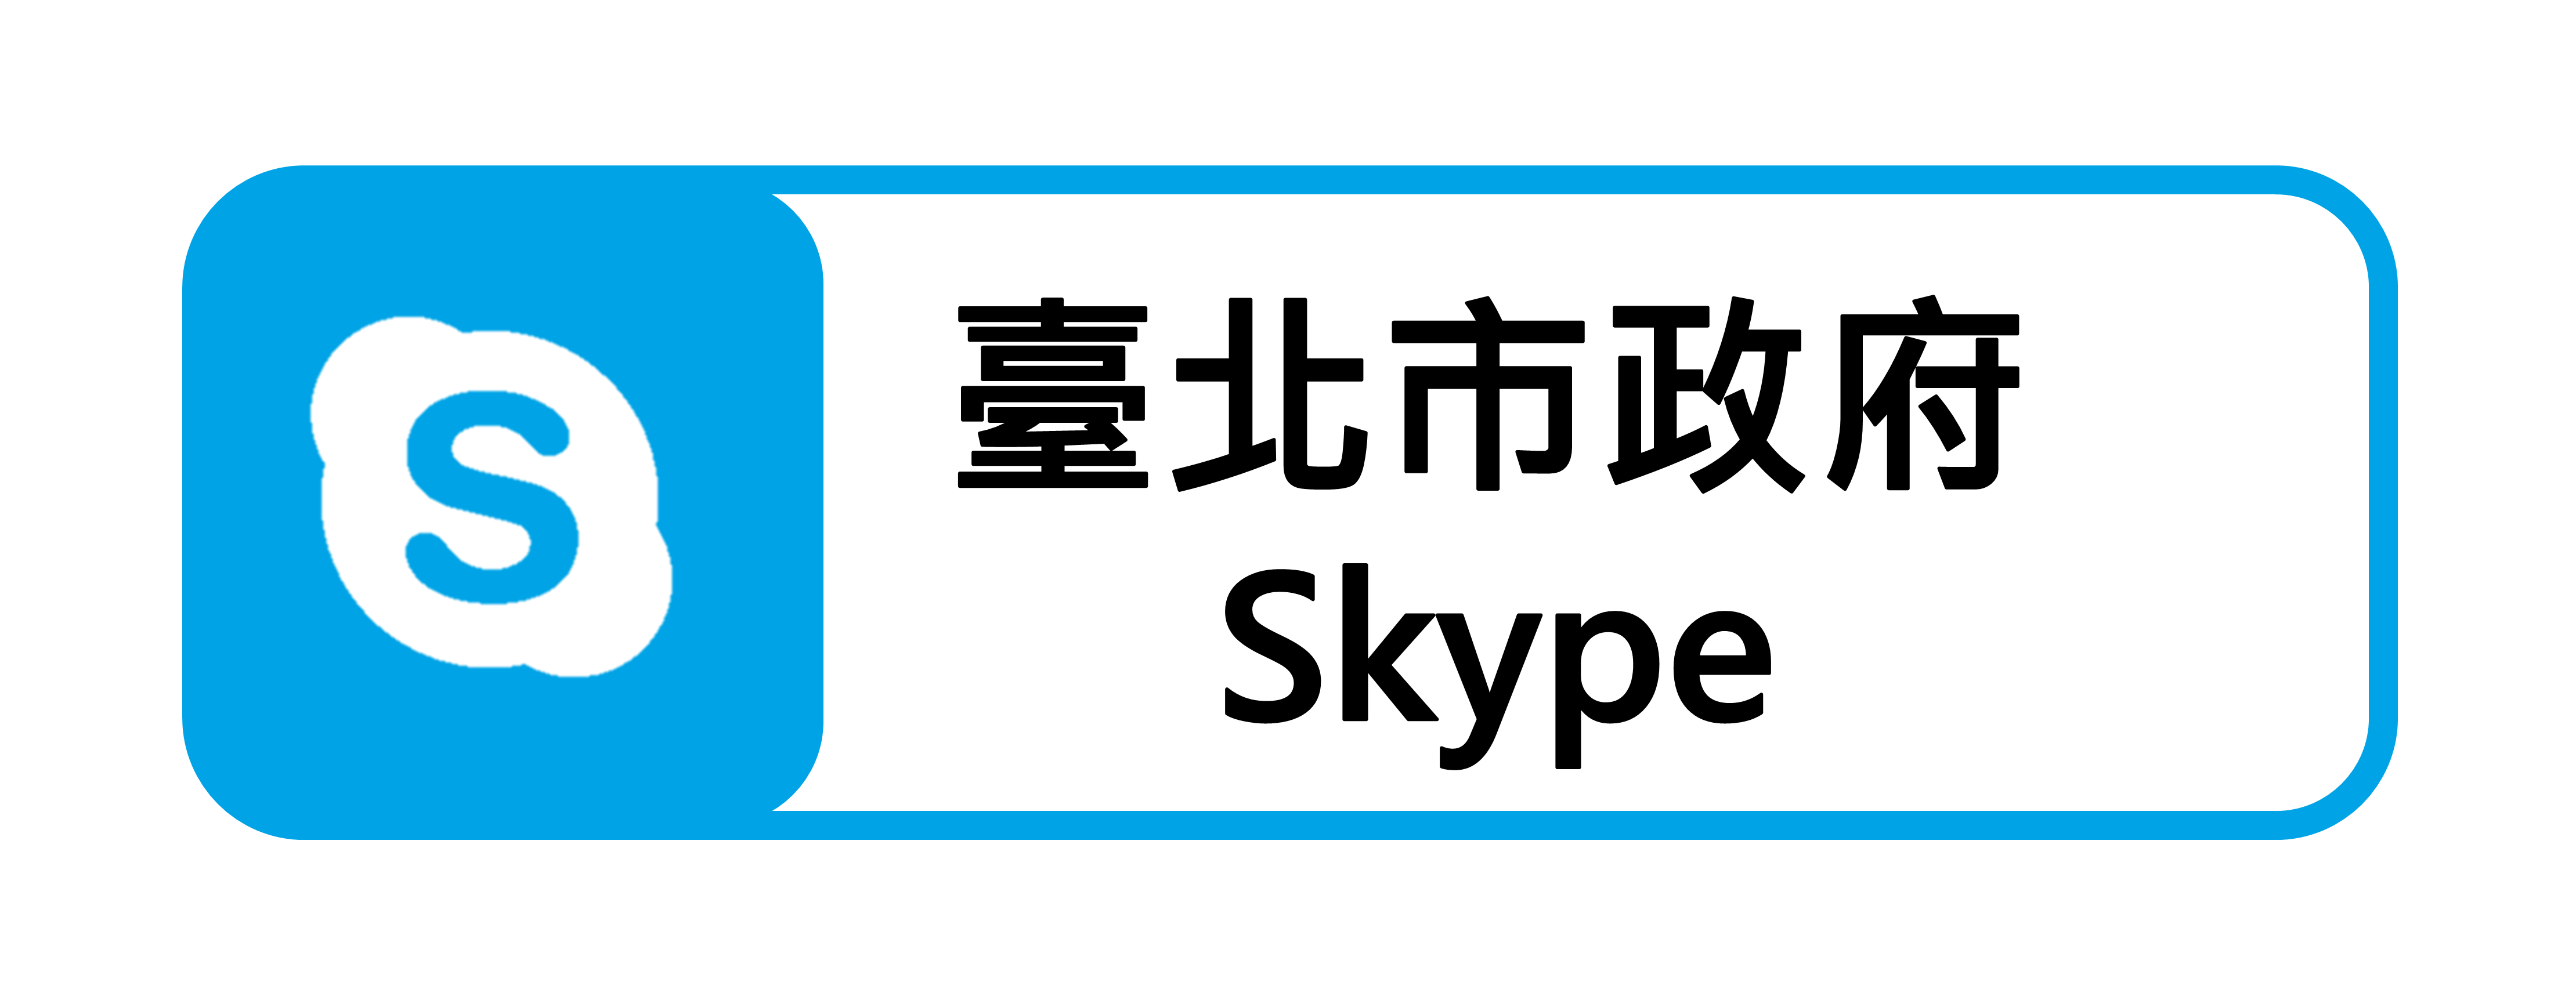 臺北市政府Skype(連結至臺北市政府Skype服務說明)